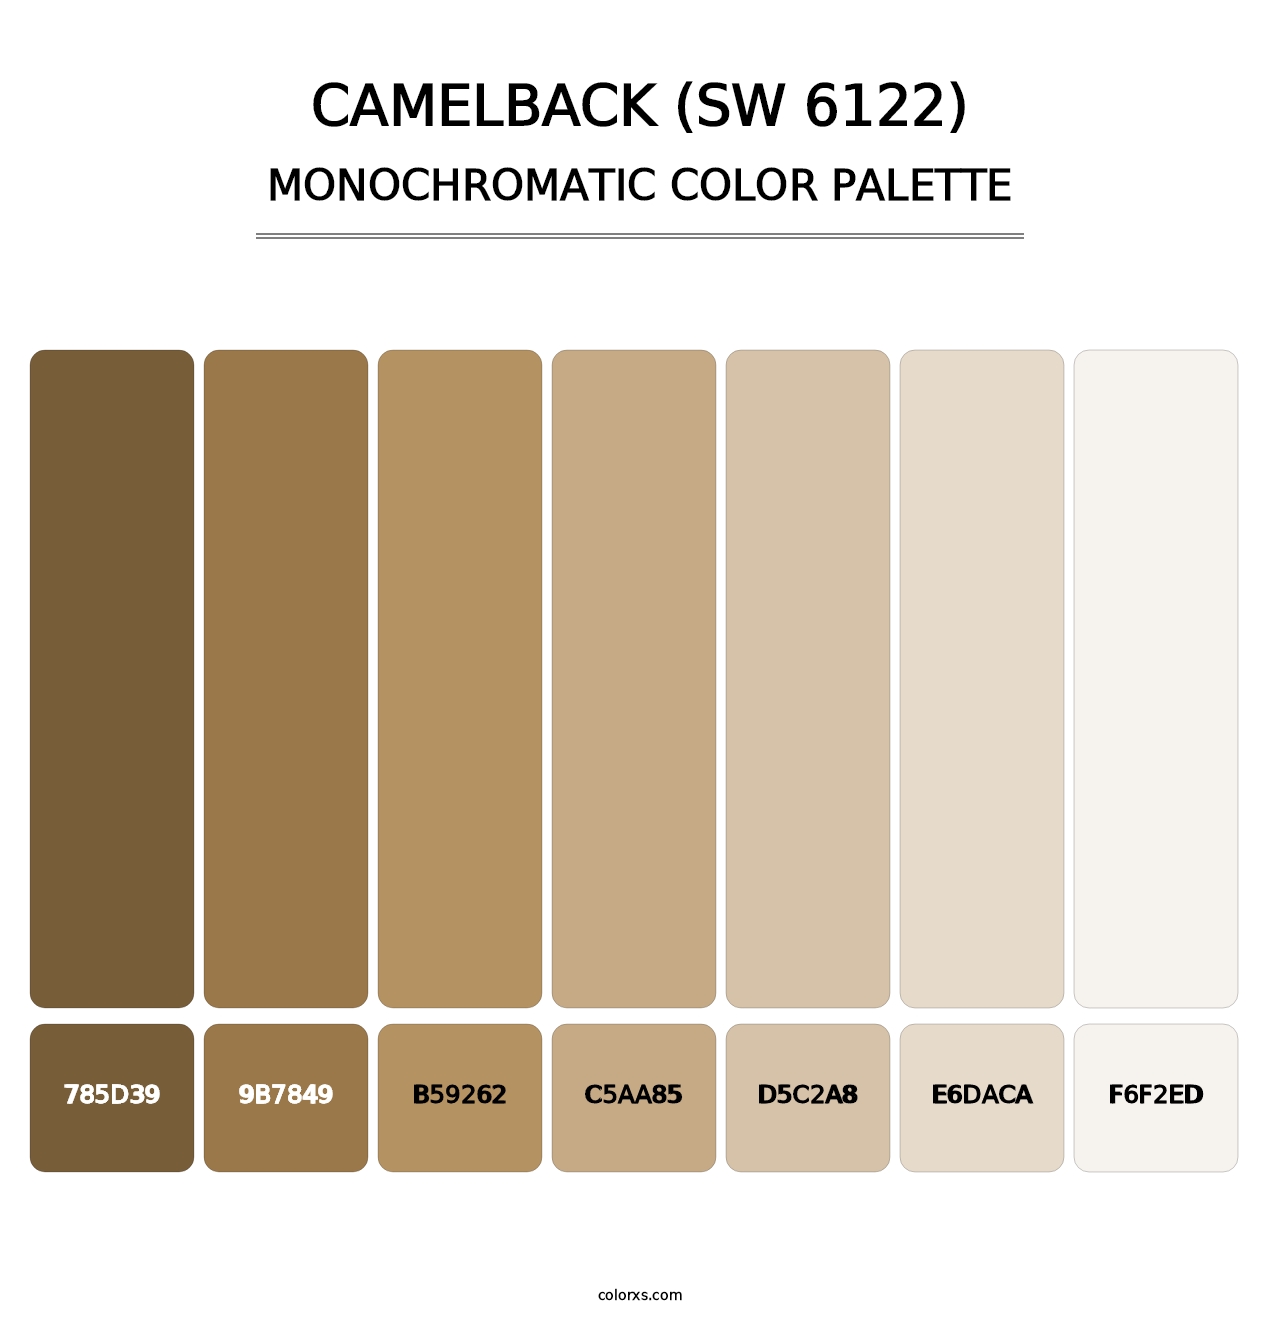 Camelback (SW 6122) - Monochromatic Color Palette